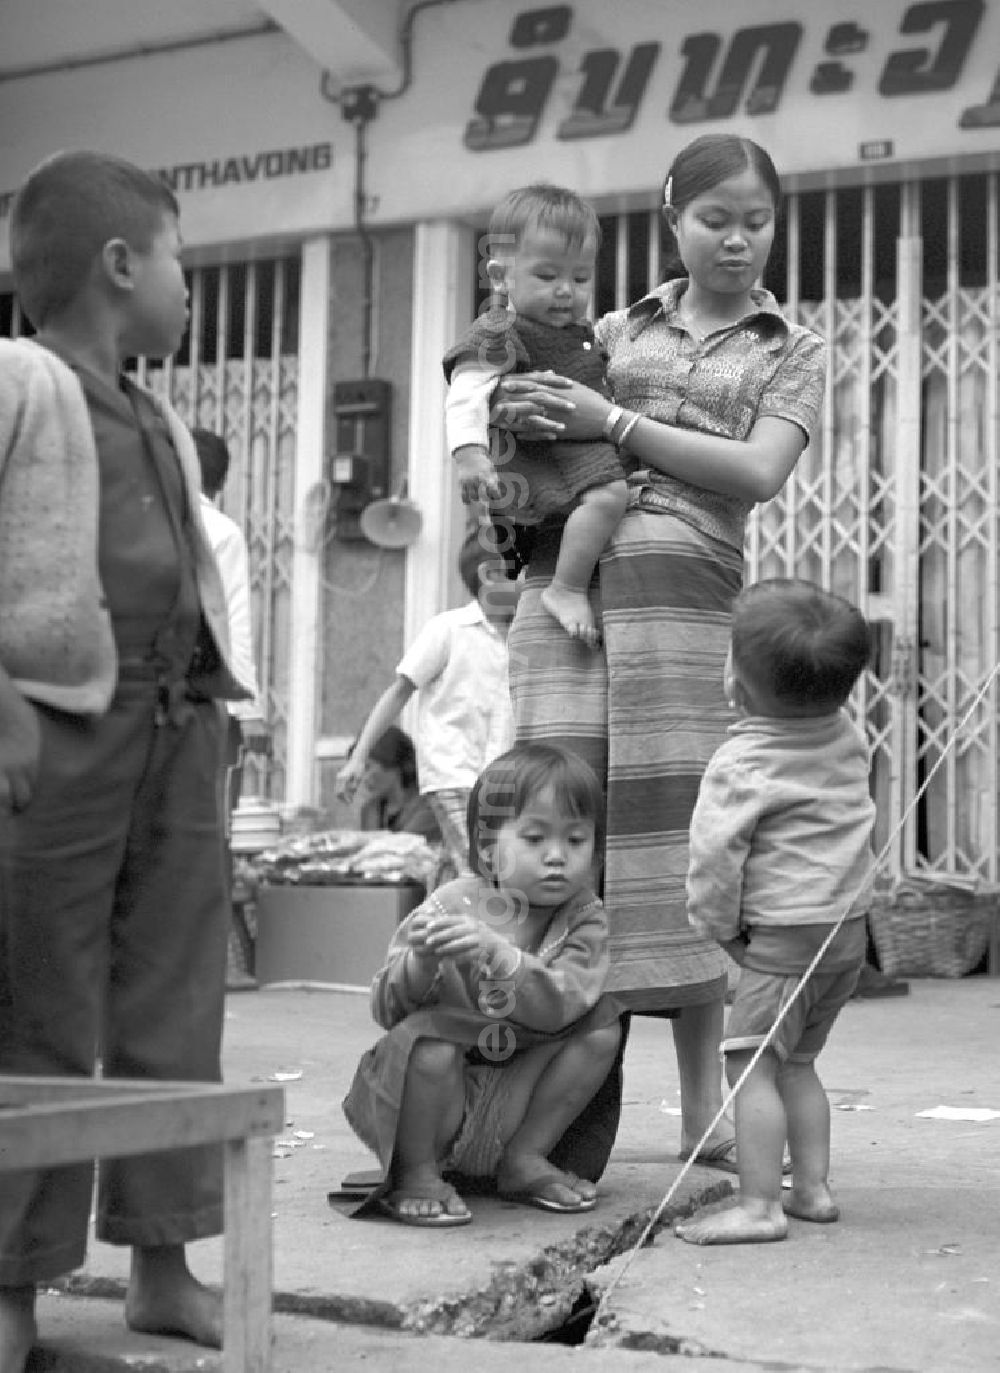 GDR picture archive: Vientiane - Eine Frau mit ihren Kindern auf einer Straße in Vientiane, der Hauptstadt der Demokratischen Volksrepublik Laos.